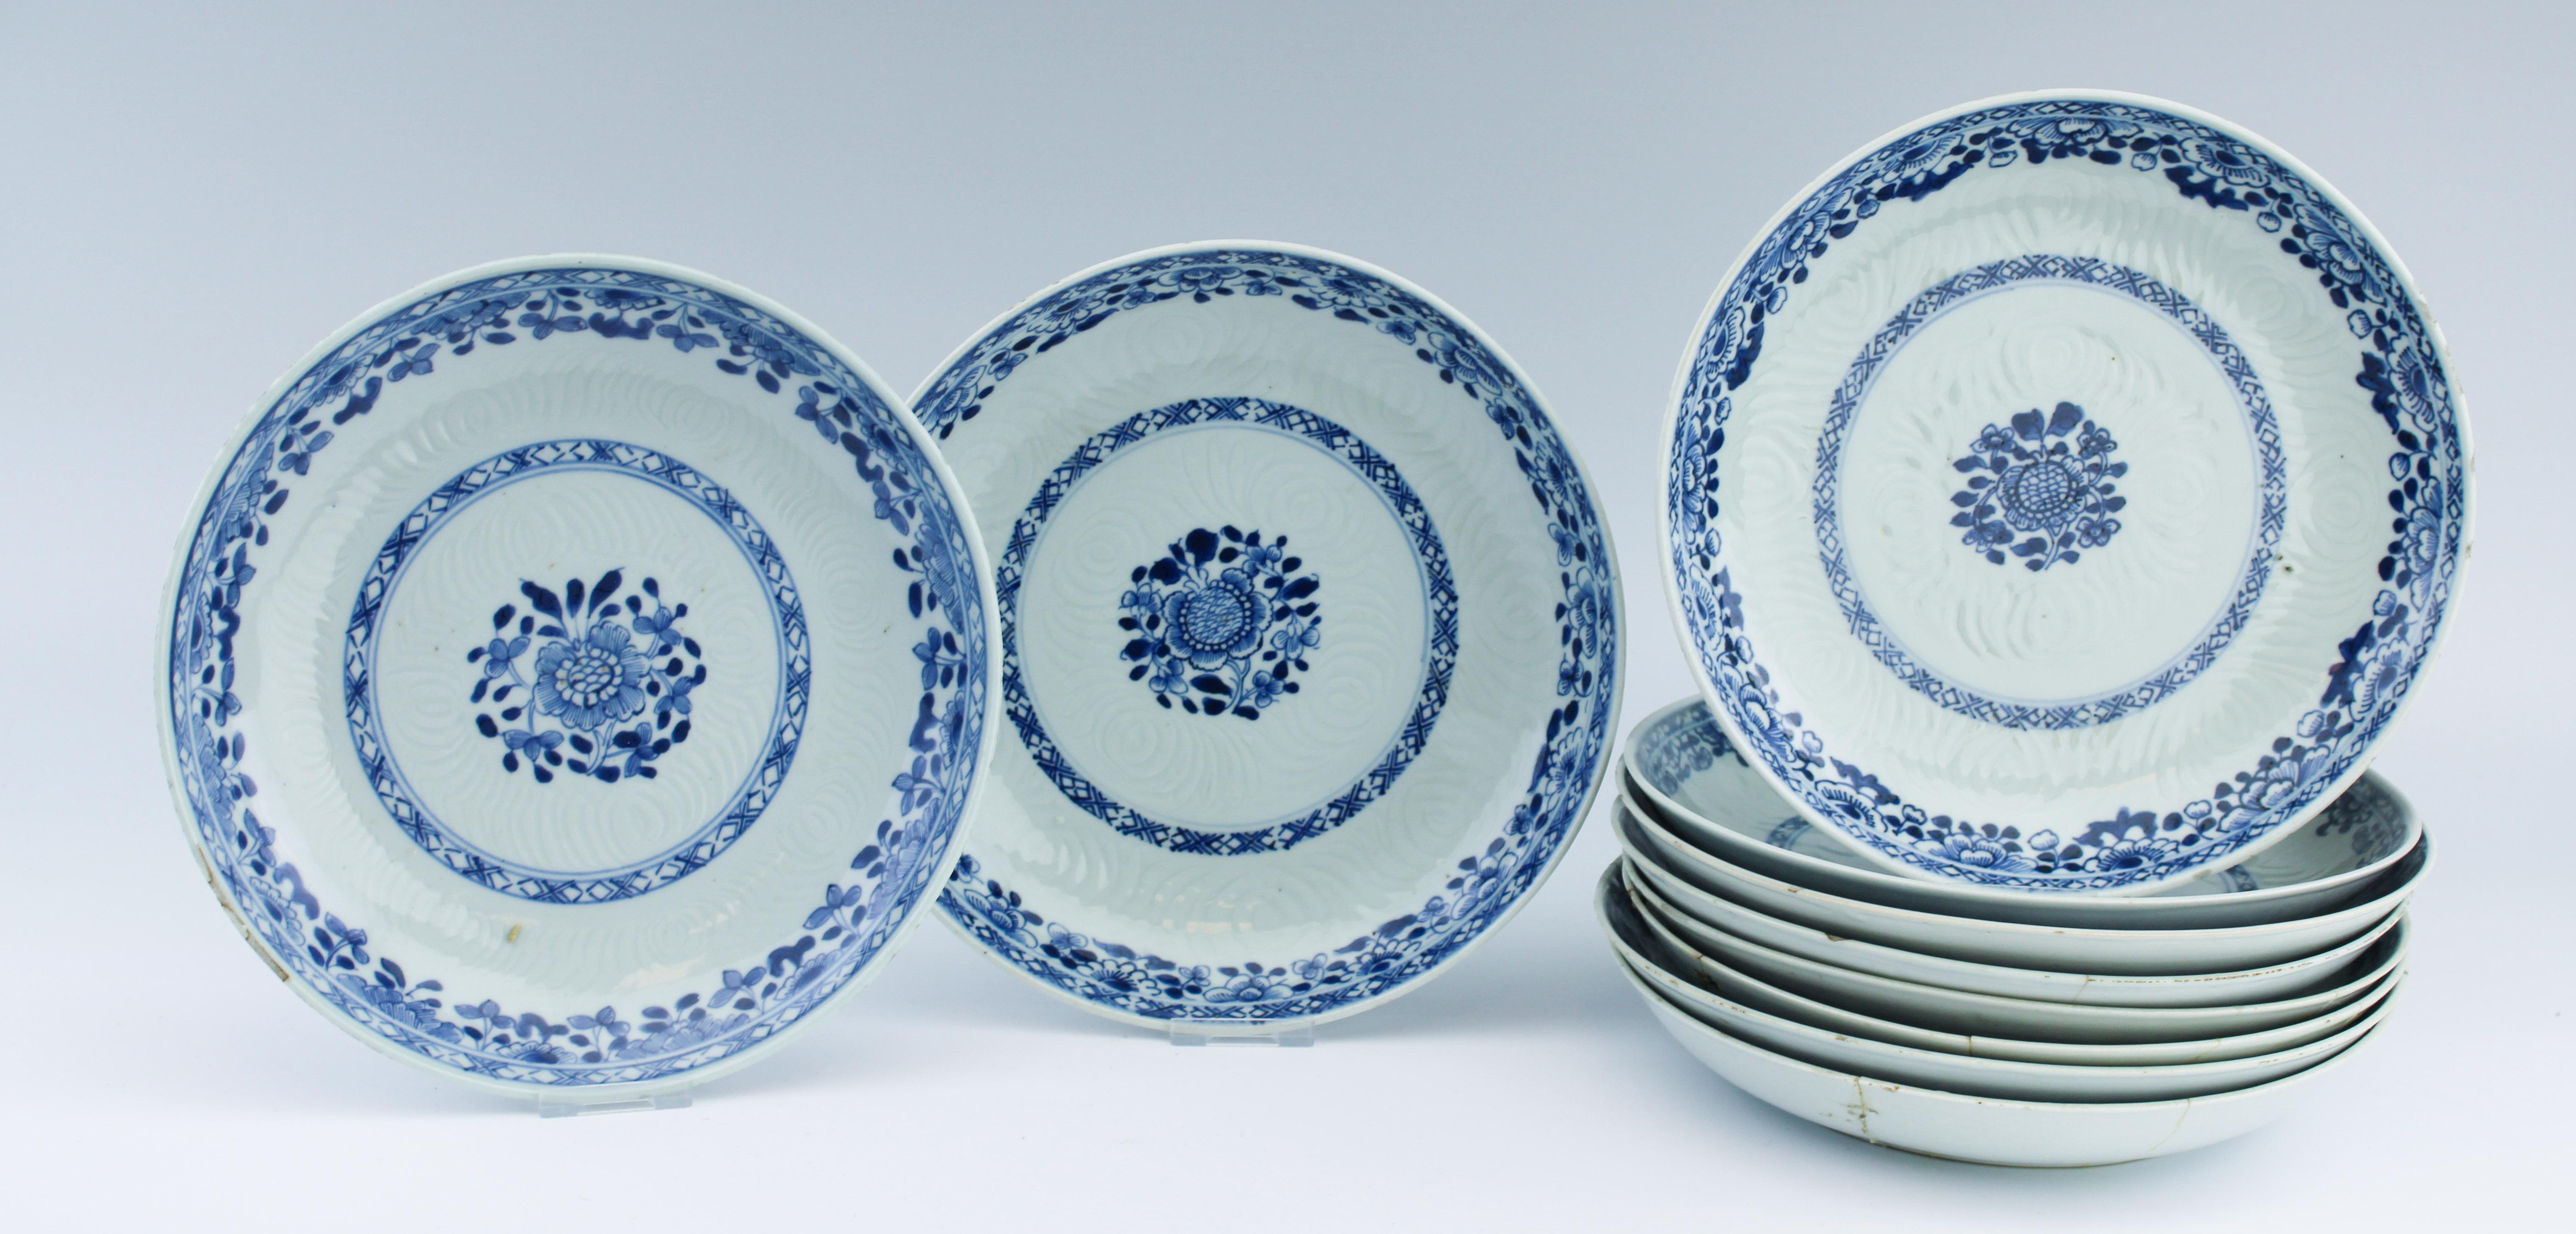 Très belle série de plats en bleu et blanc, période Kangxi, dans le style japonais de Whiting. Vers 1700. Décoré de fleurs et d'oiseaux

Condit
Très bon état. Fruits et éclats mineurs sur le bord. Deux avec une ligne de démarcation. 1 au bord, 1 à